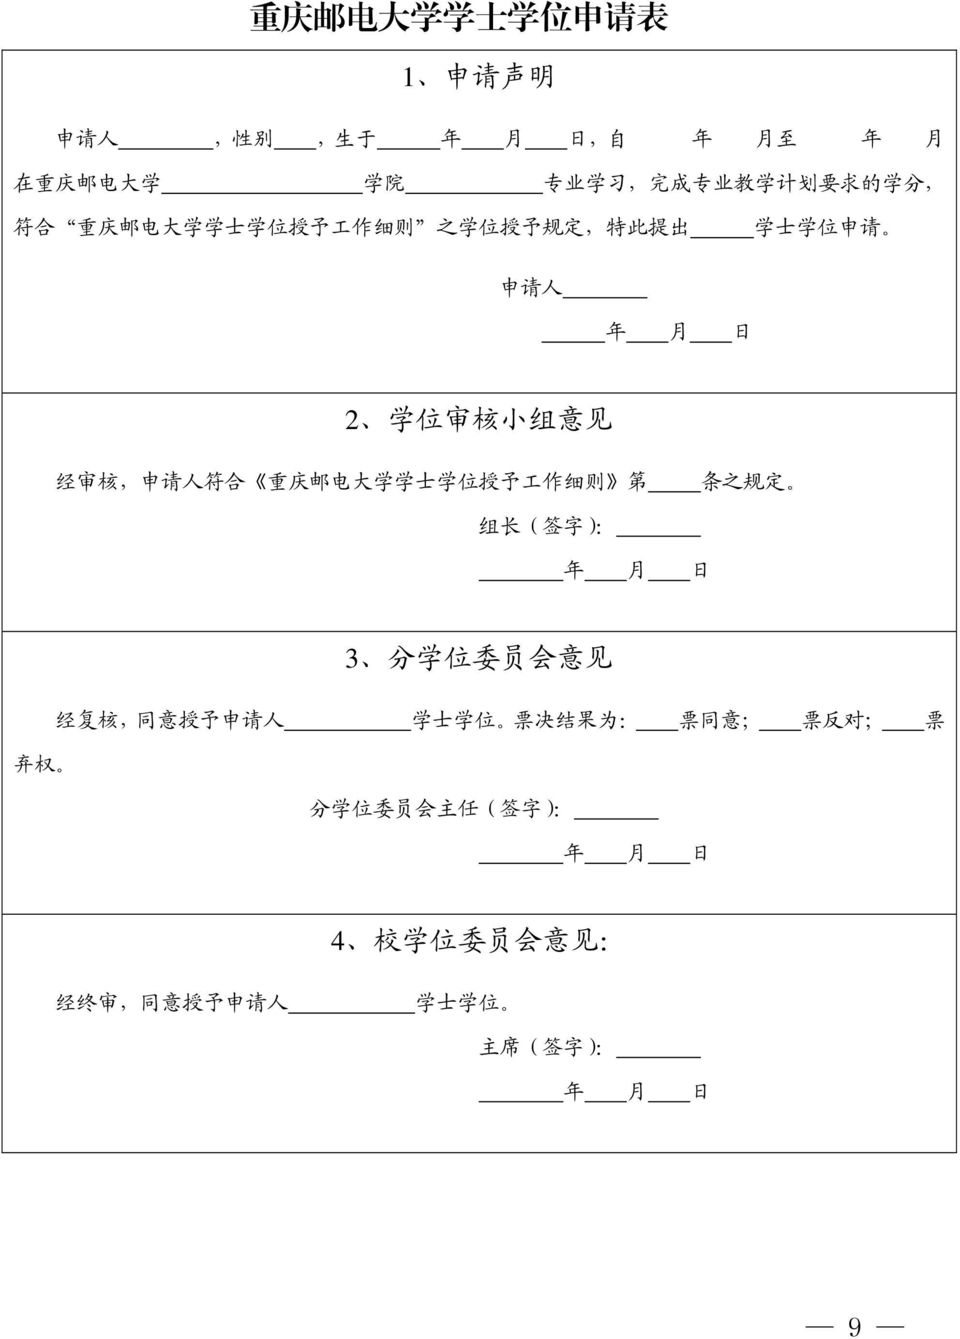 符 合 重 庆 邮 电 大 学 学 士 学 位 授 予 工 作 细 则 第 条 之 规 定 组 长 ( 签 字 ): 3 分 学 位 委 员 会 意 见 经 复 核, 同 意 授 予 申 请 人 学 士 学 位 票 决 结 果